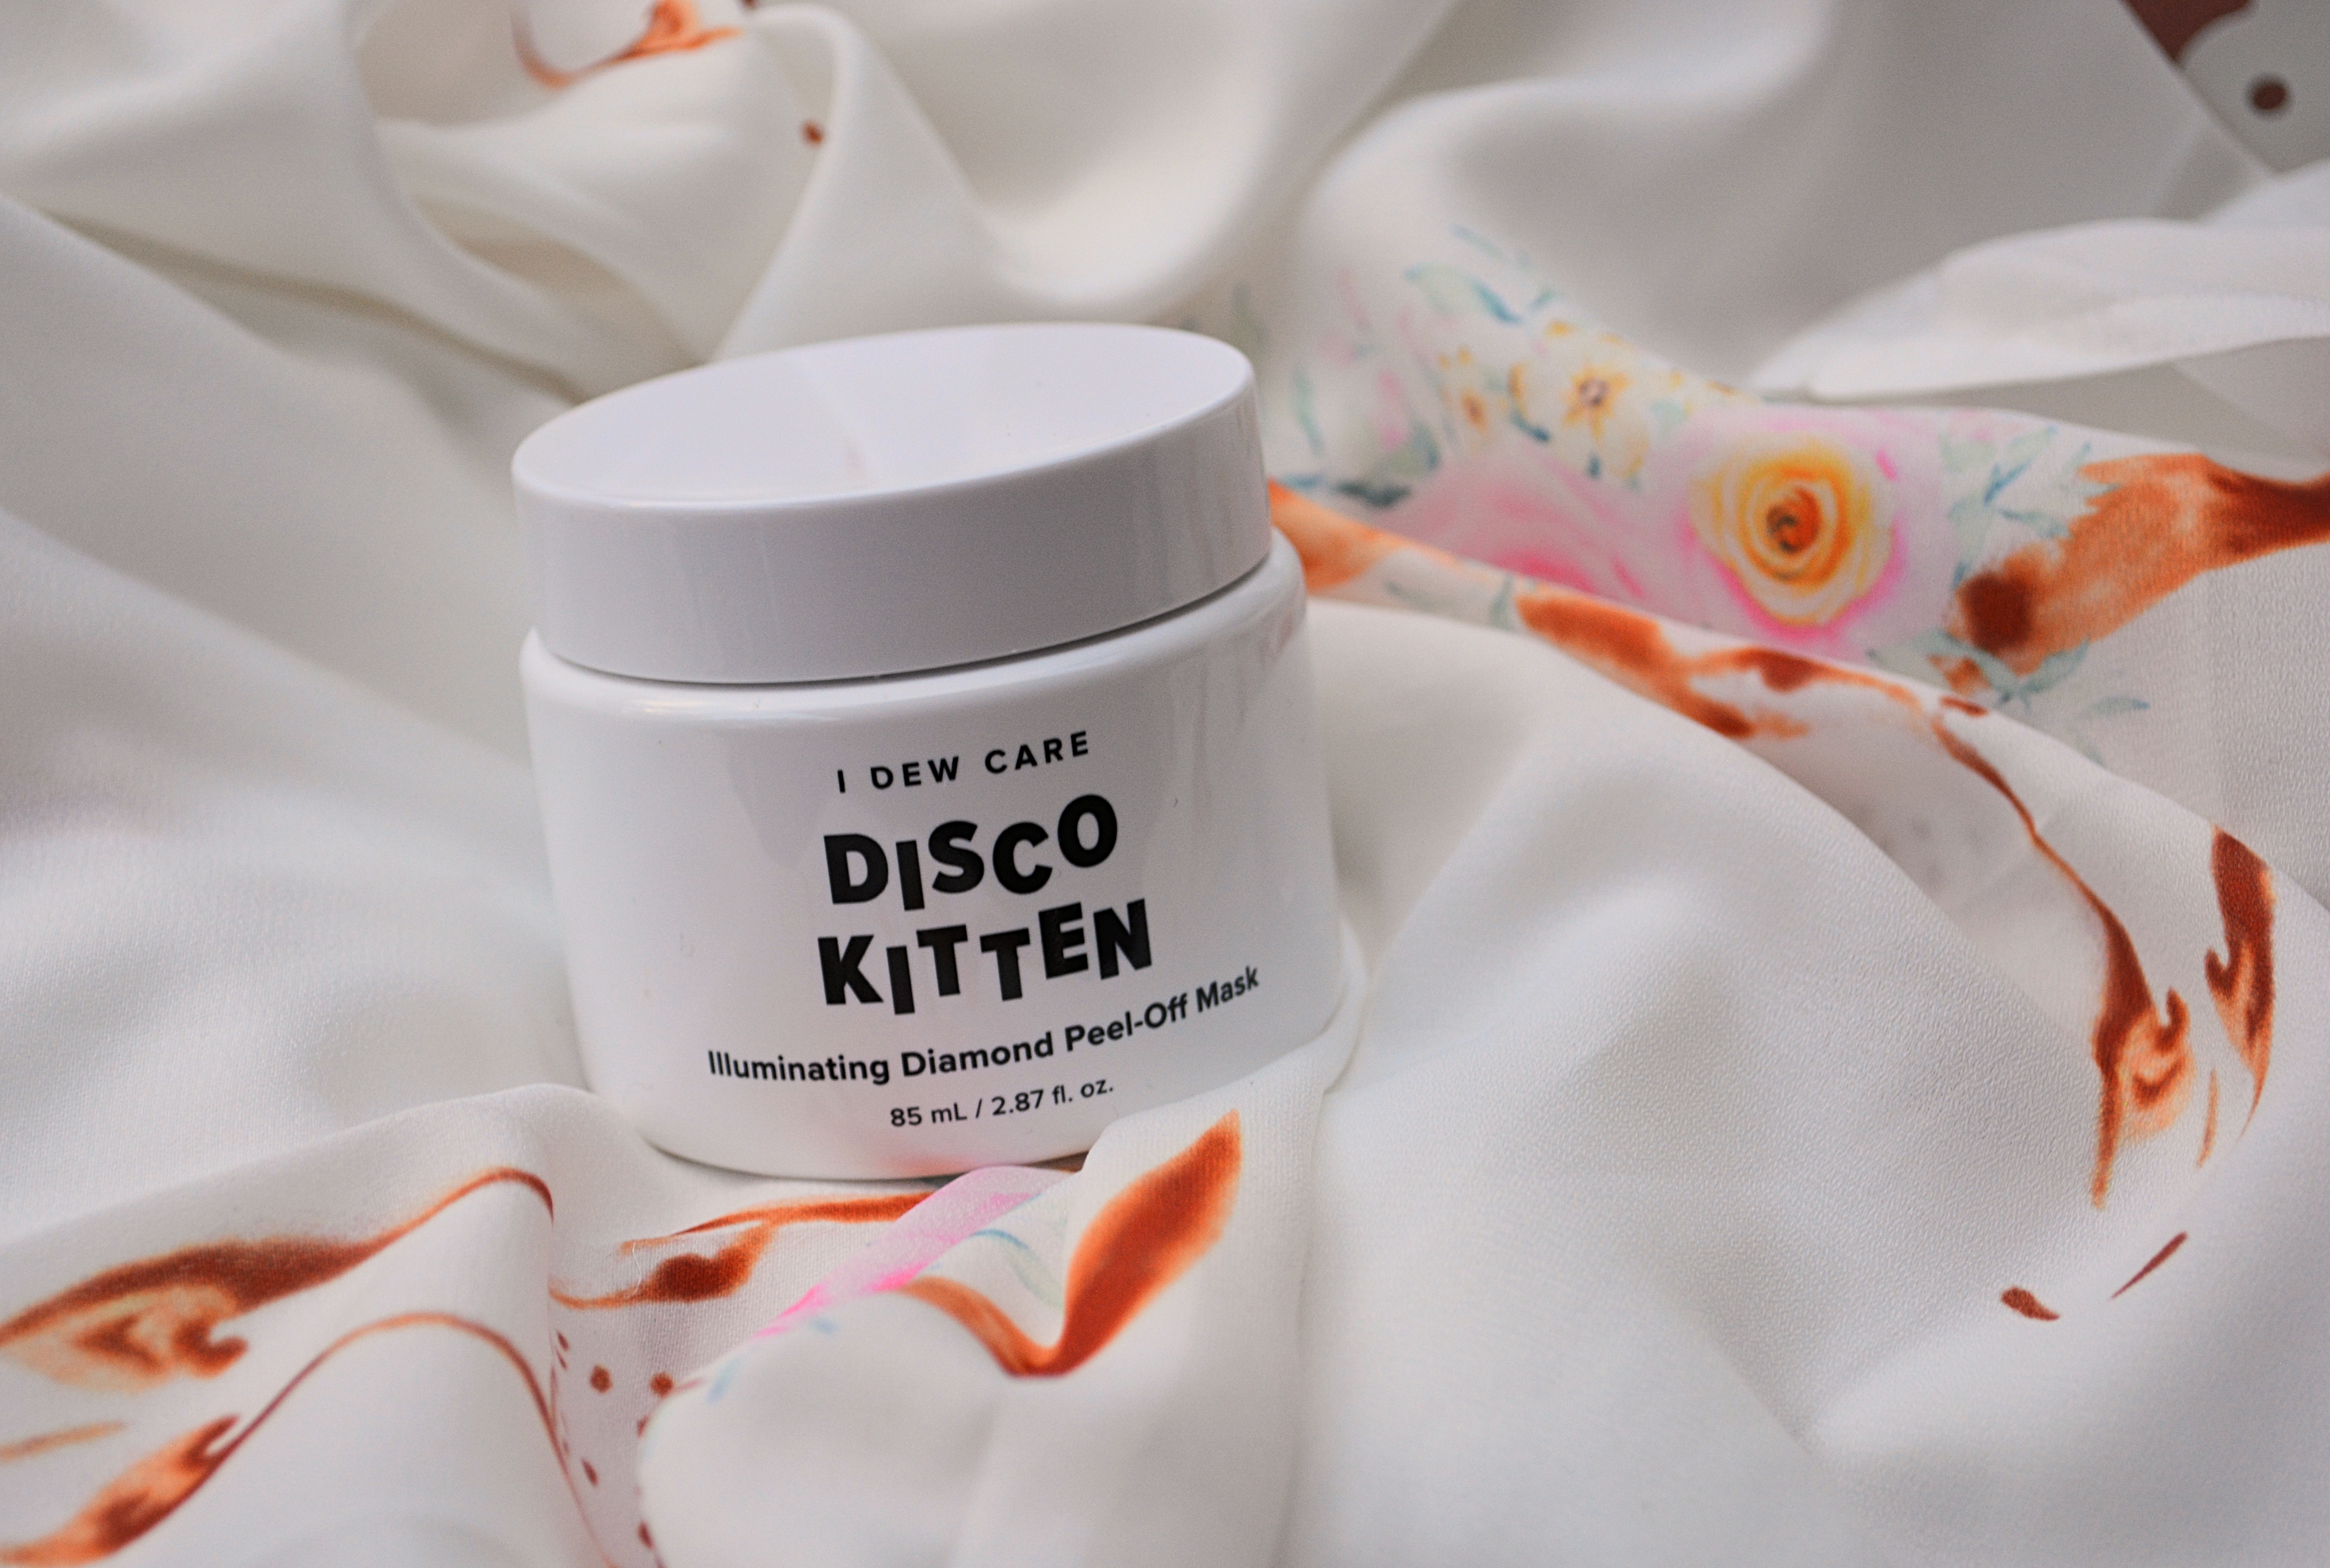 I Dew Care Disco Kitten